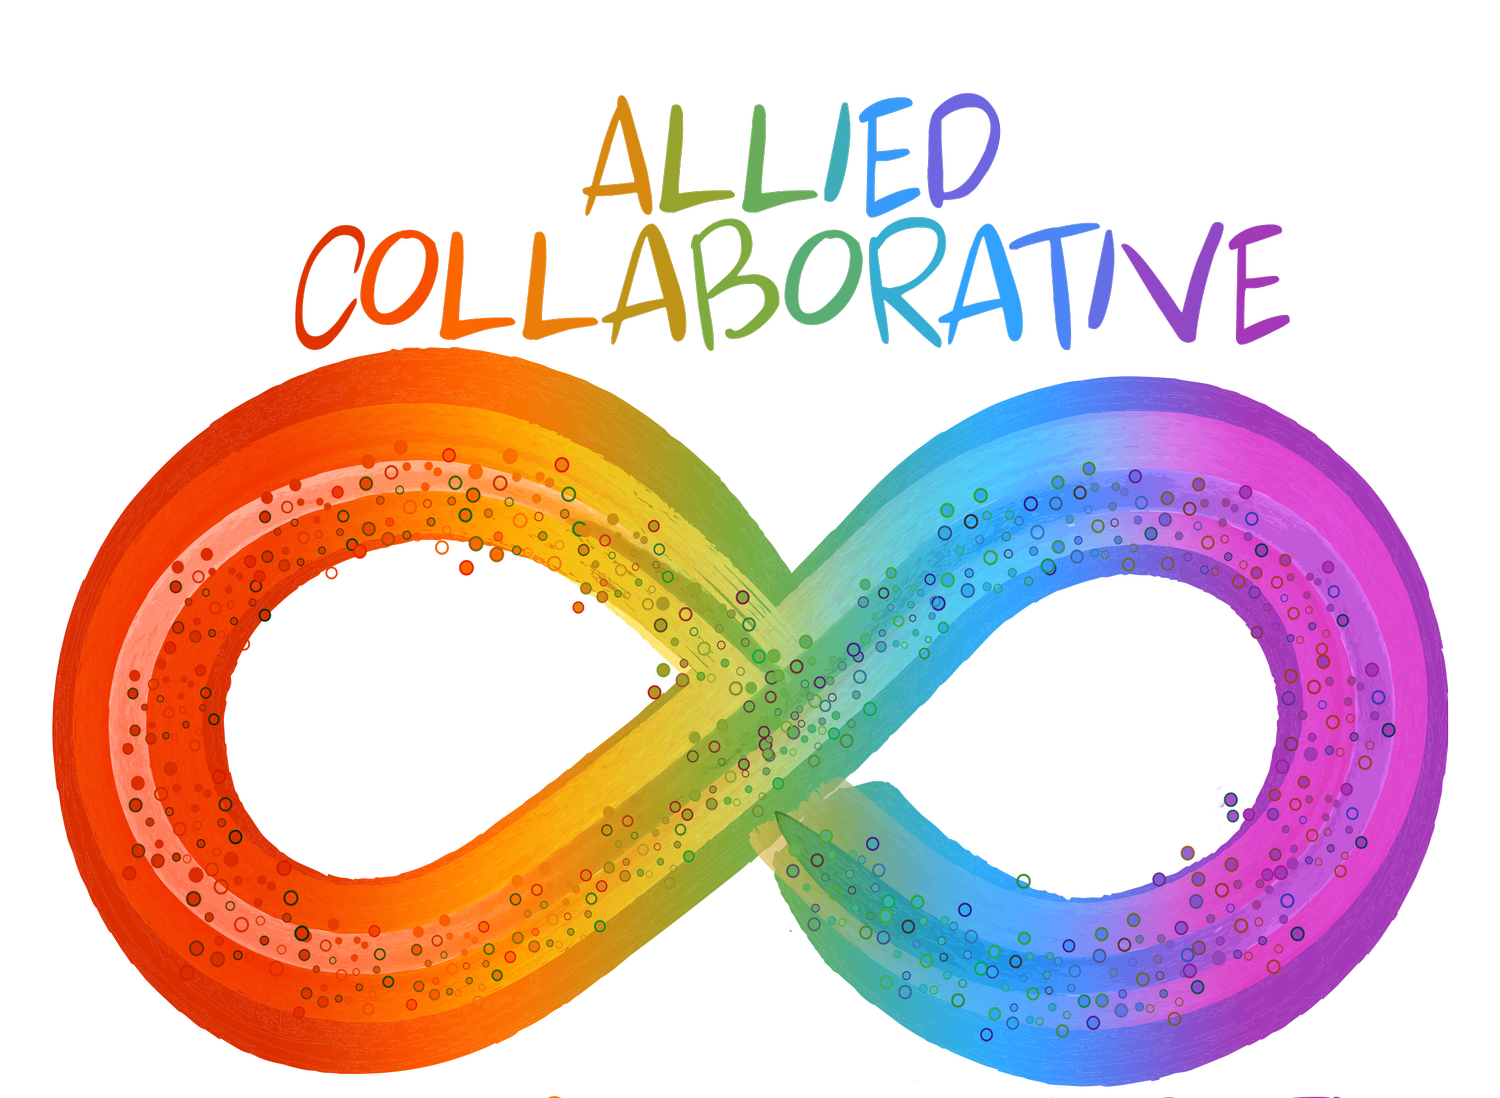 Allied Collaborative